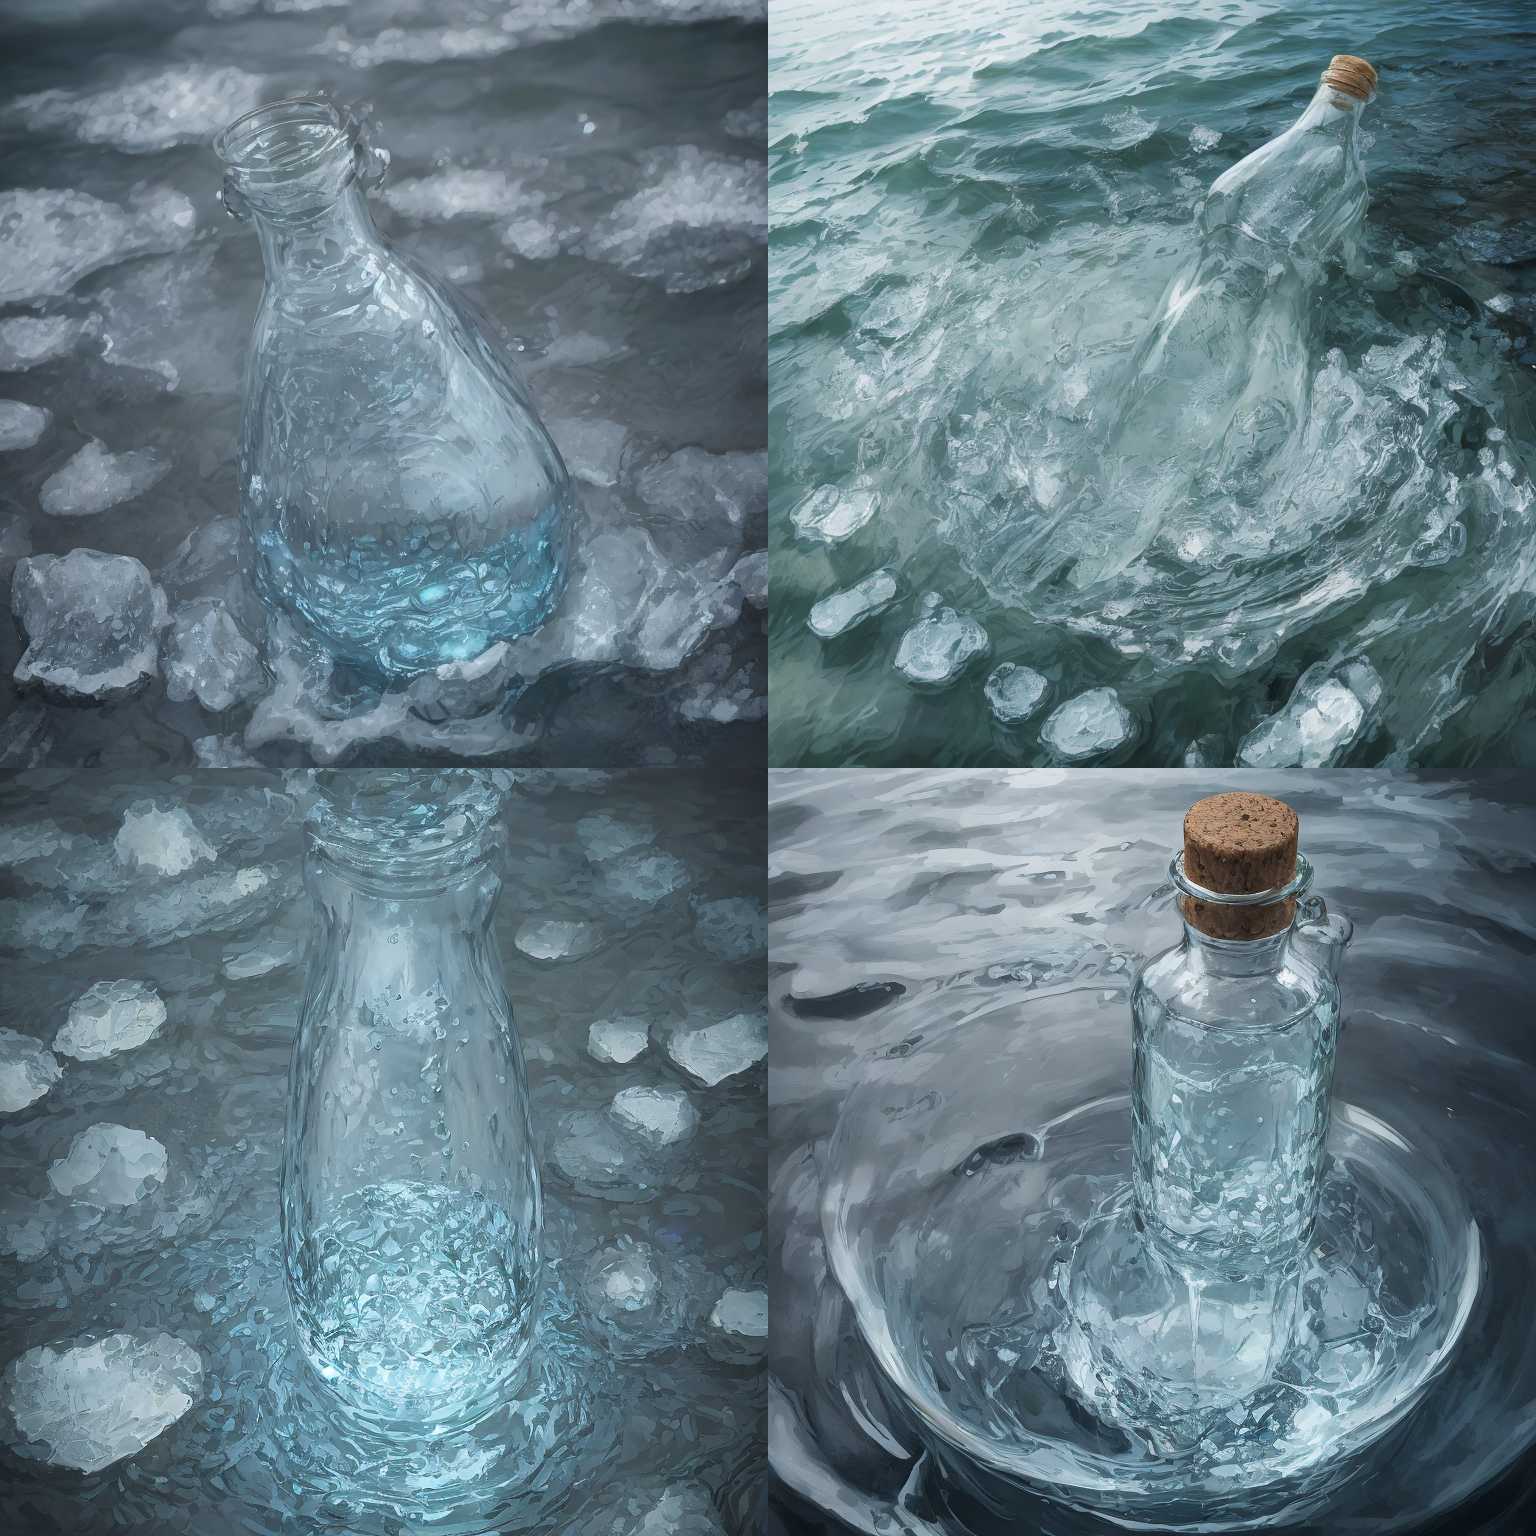 A full bottle in water